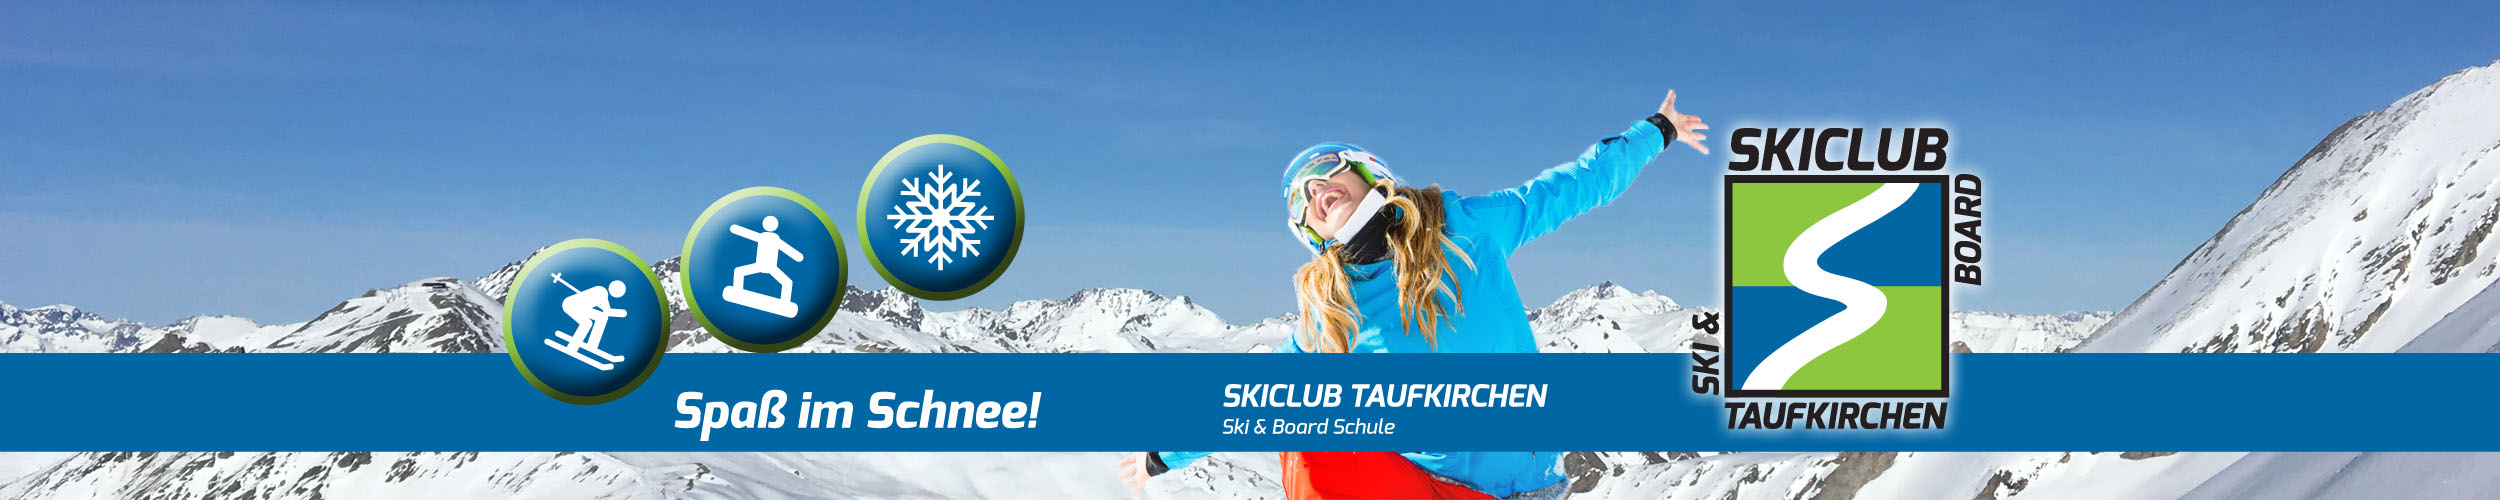 Skiclub Taufkirchen e.V.